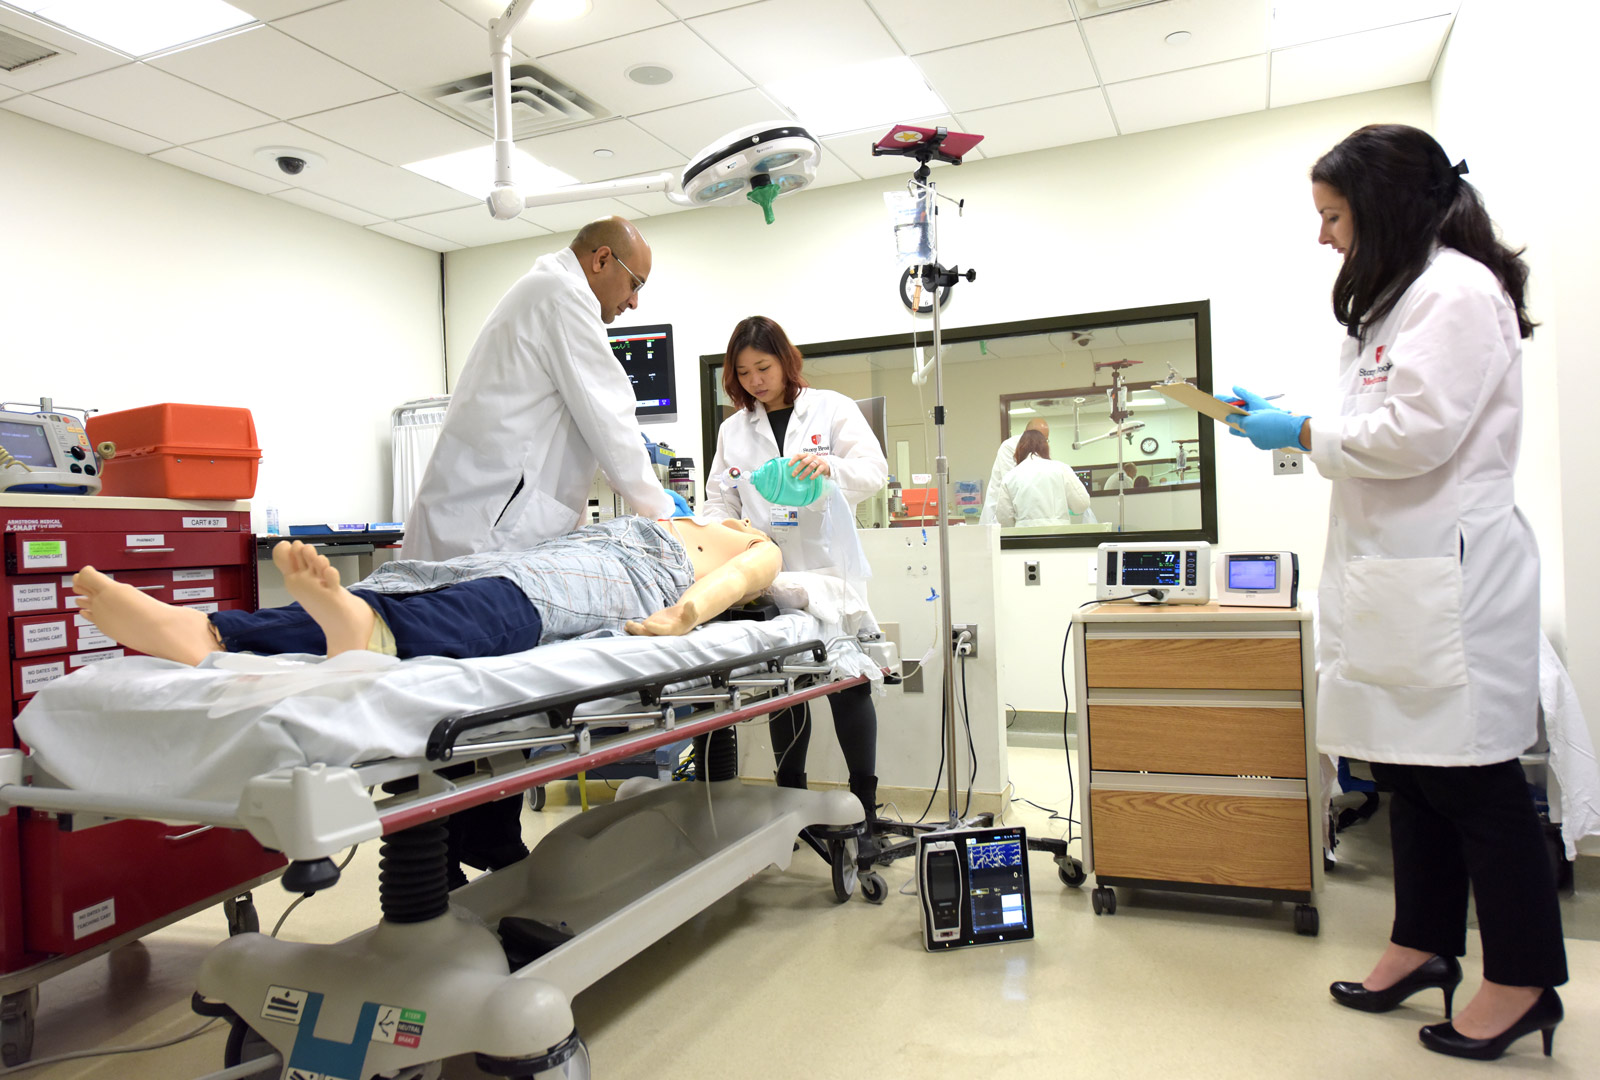 os investigadores demonstram a instalação de equipamento para o estudo AWARE II no Hospital da Universidade de Stony Brook